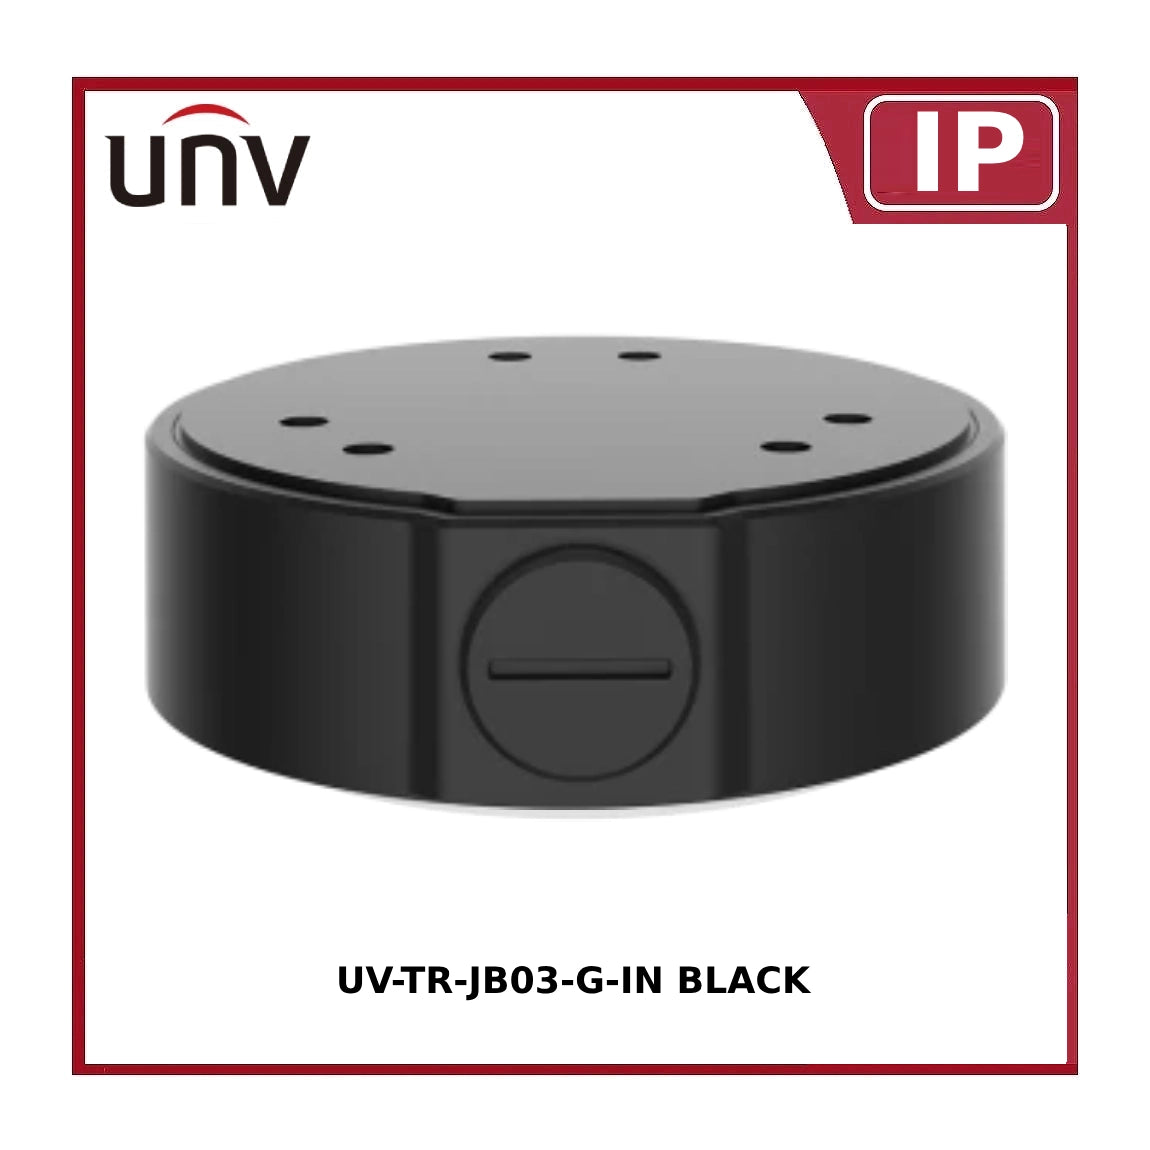 UV-TR-JB03-G-IN BLACK